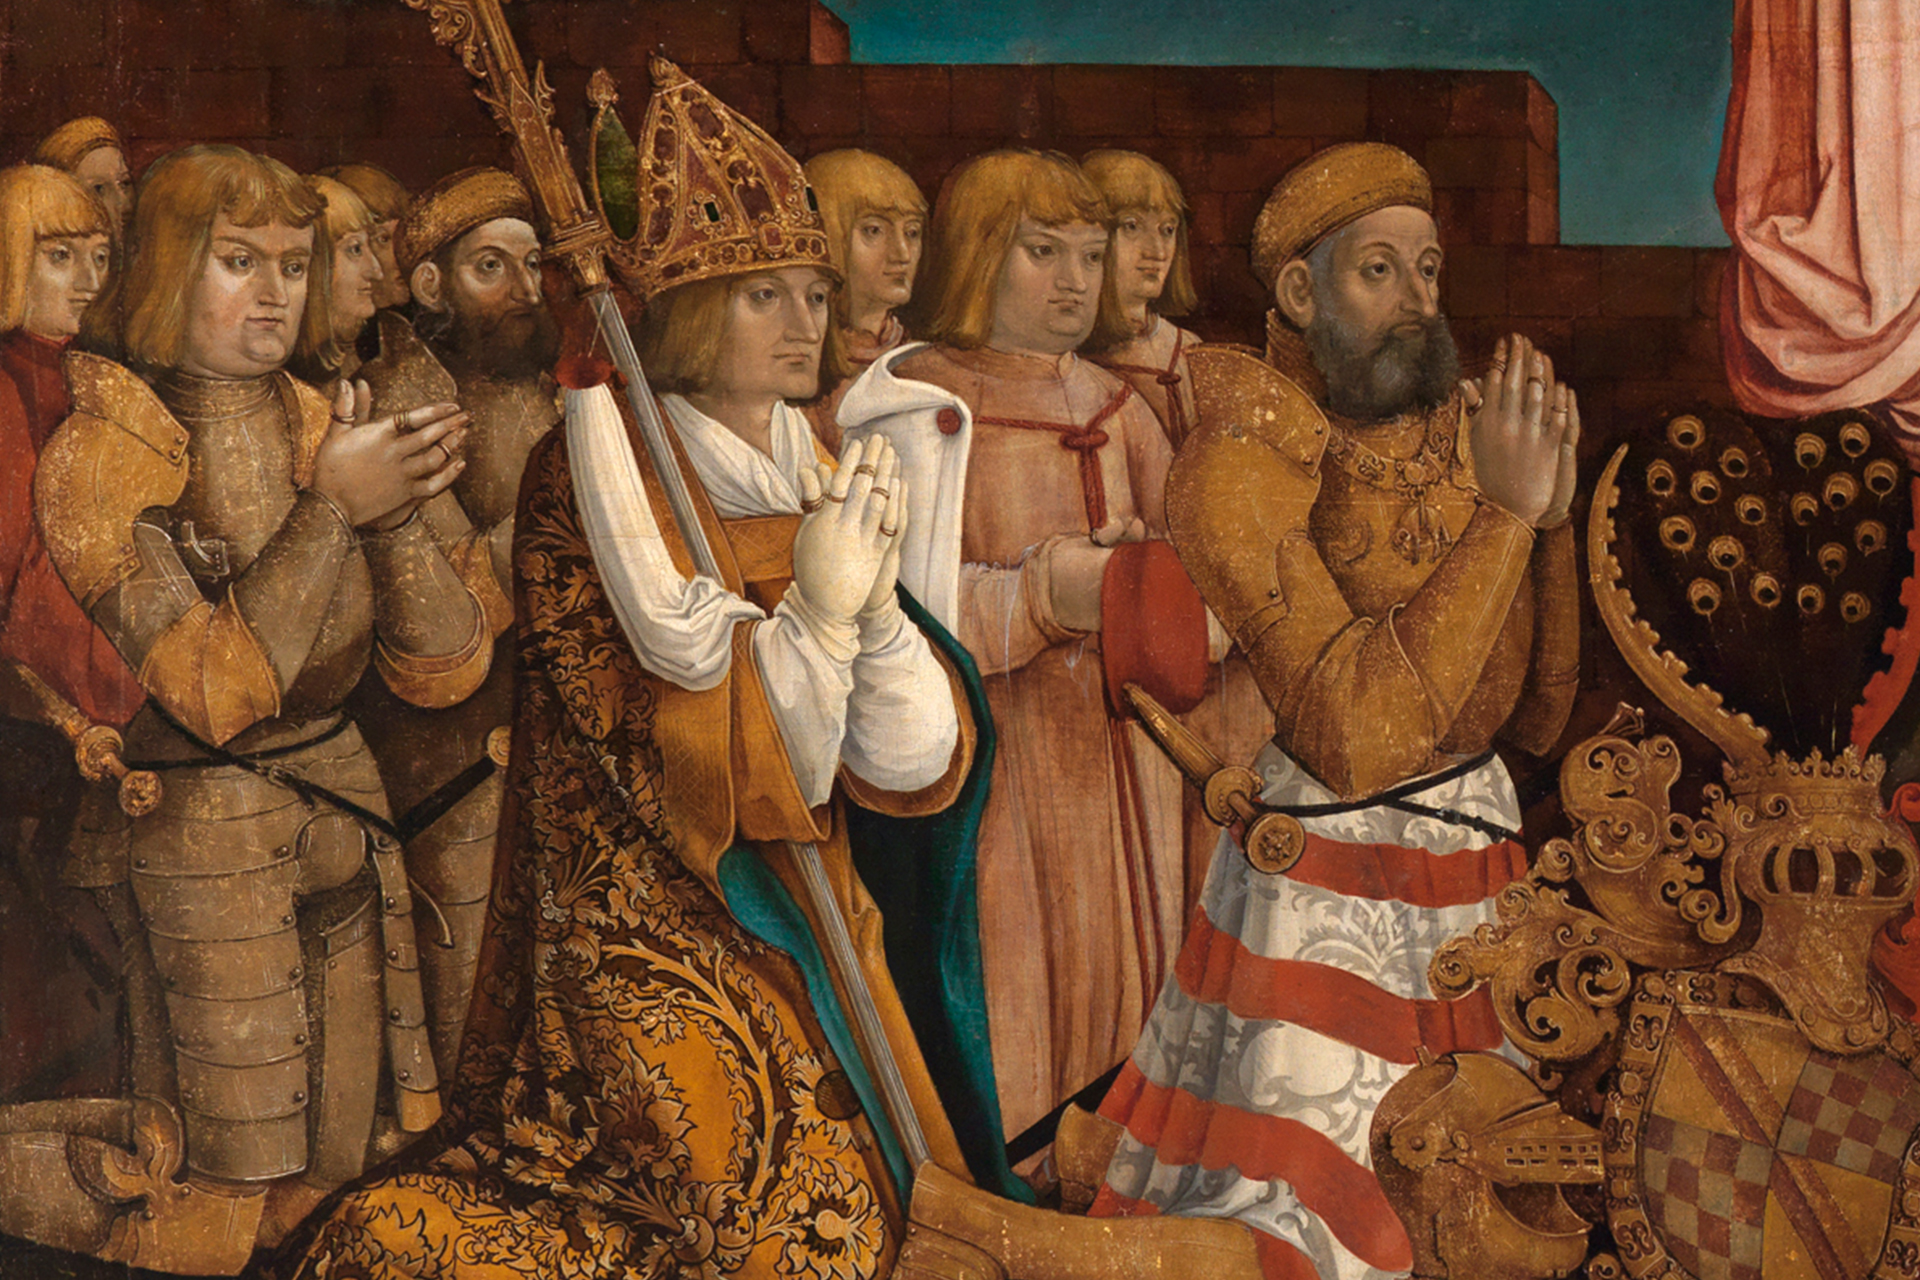 Ausschnitt eines Gemäldes von Hans Baldung, auf dem unter anderem Ritter in goldener Rüstung zu sehen sind.